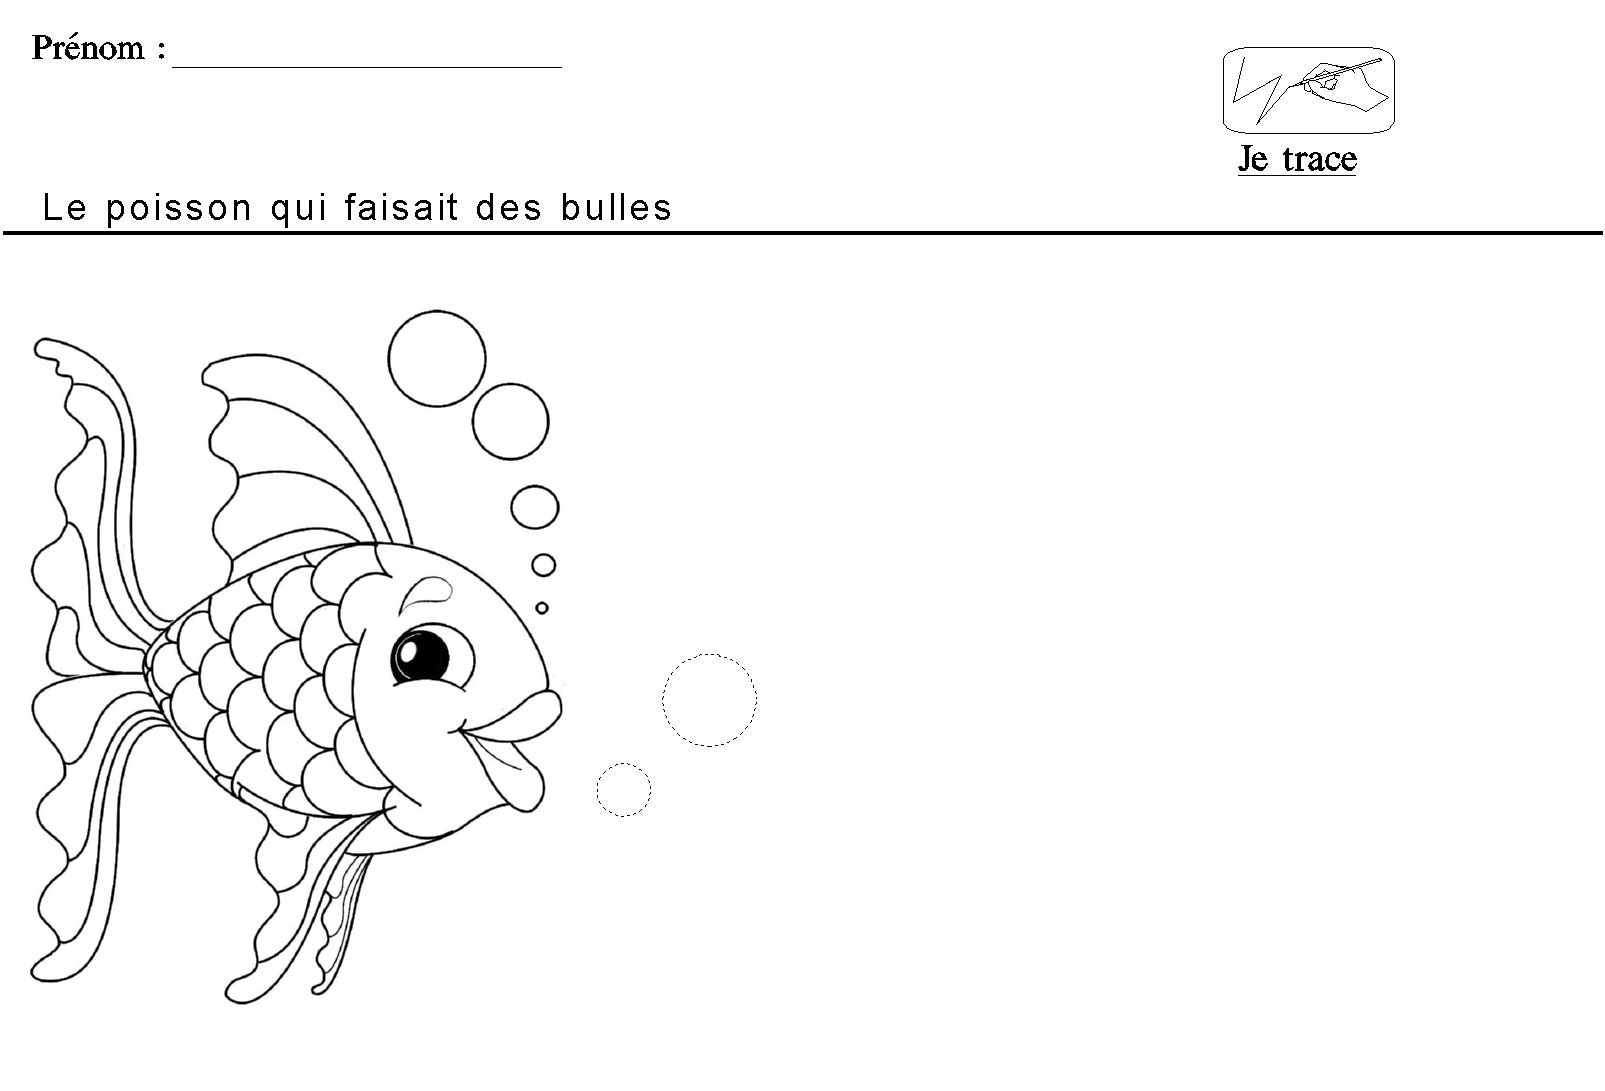 Je dessine les bulles du poisson Arc en ciel en respectant le sens du